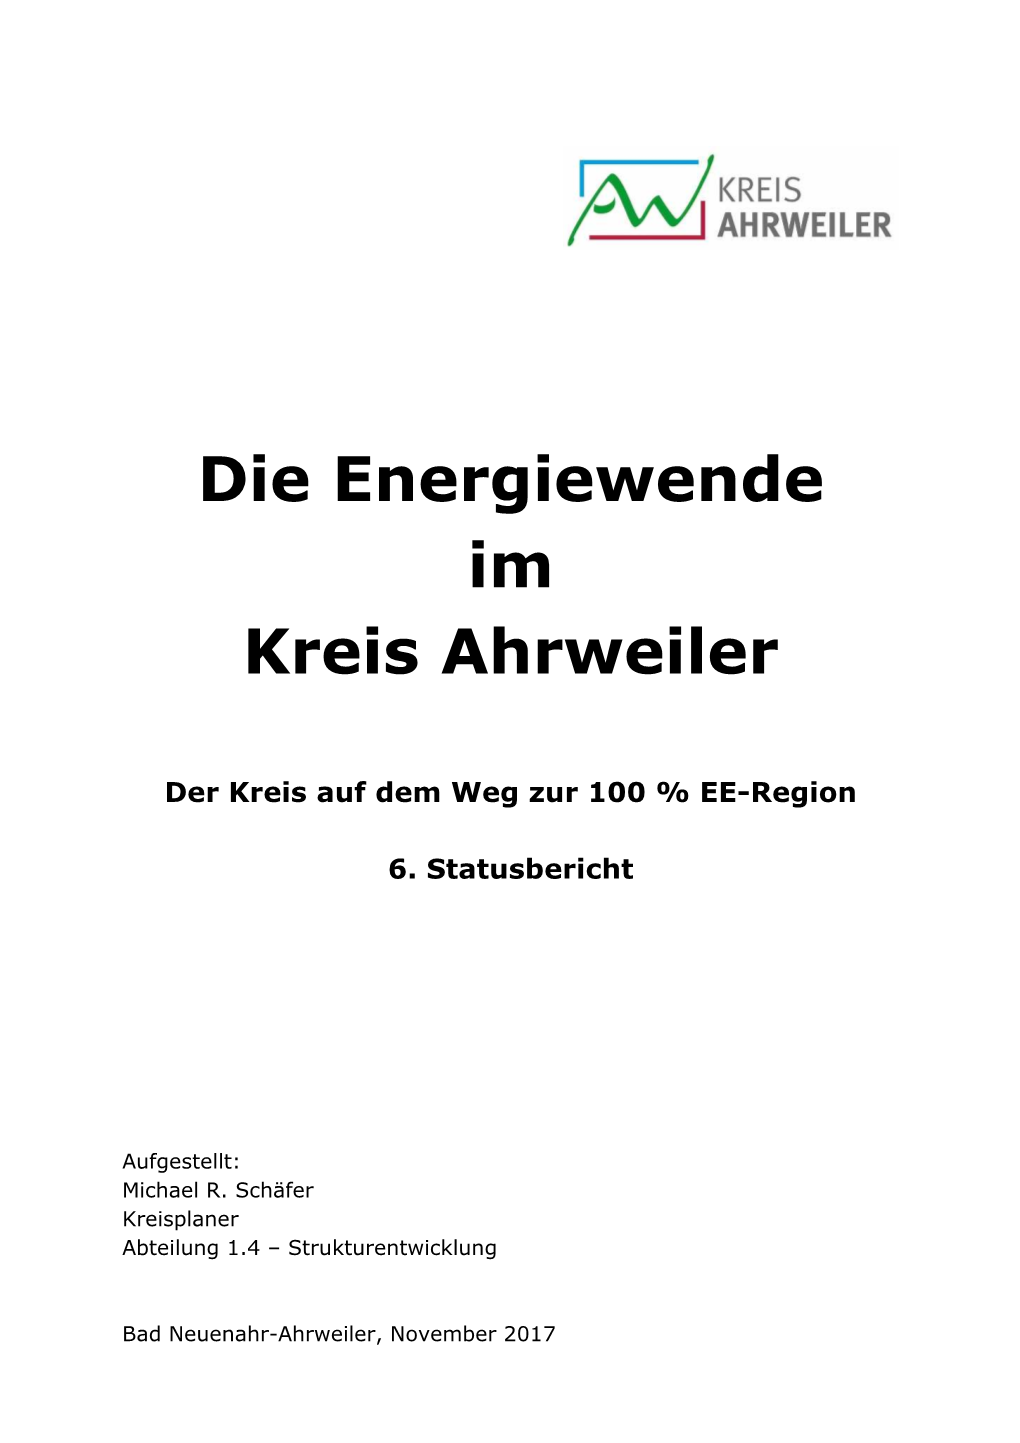 Die Energiewende Im Kreis Ahrweiler